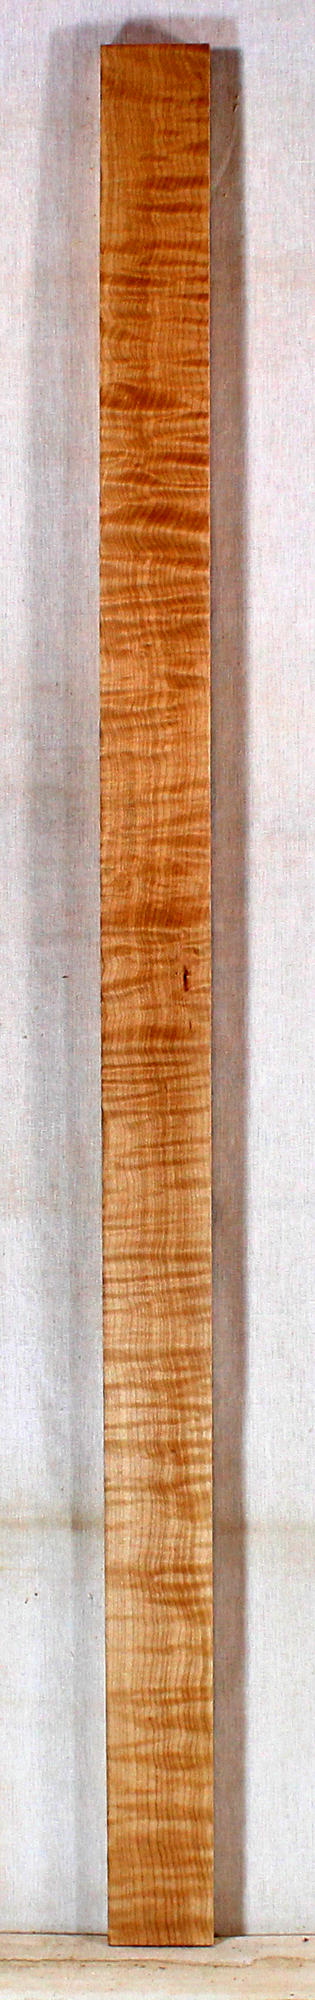 Maple Dulcimer Finger Board (BK92)